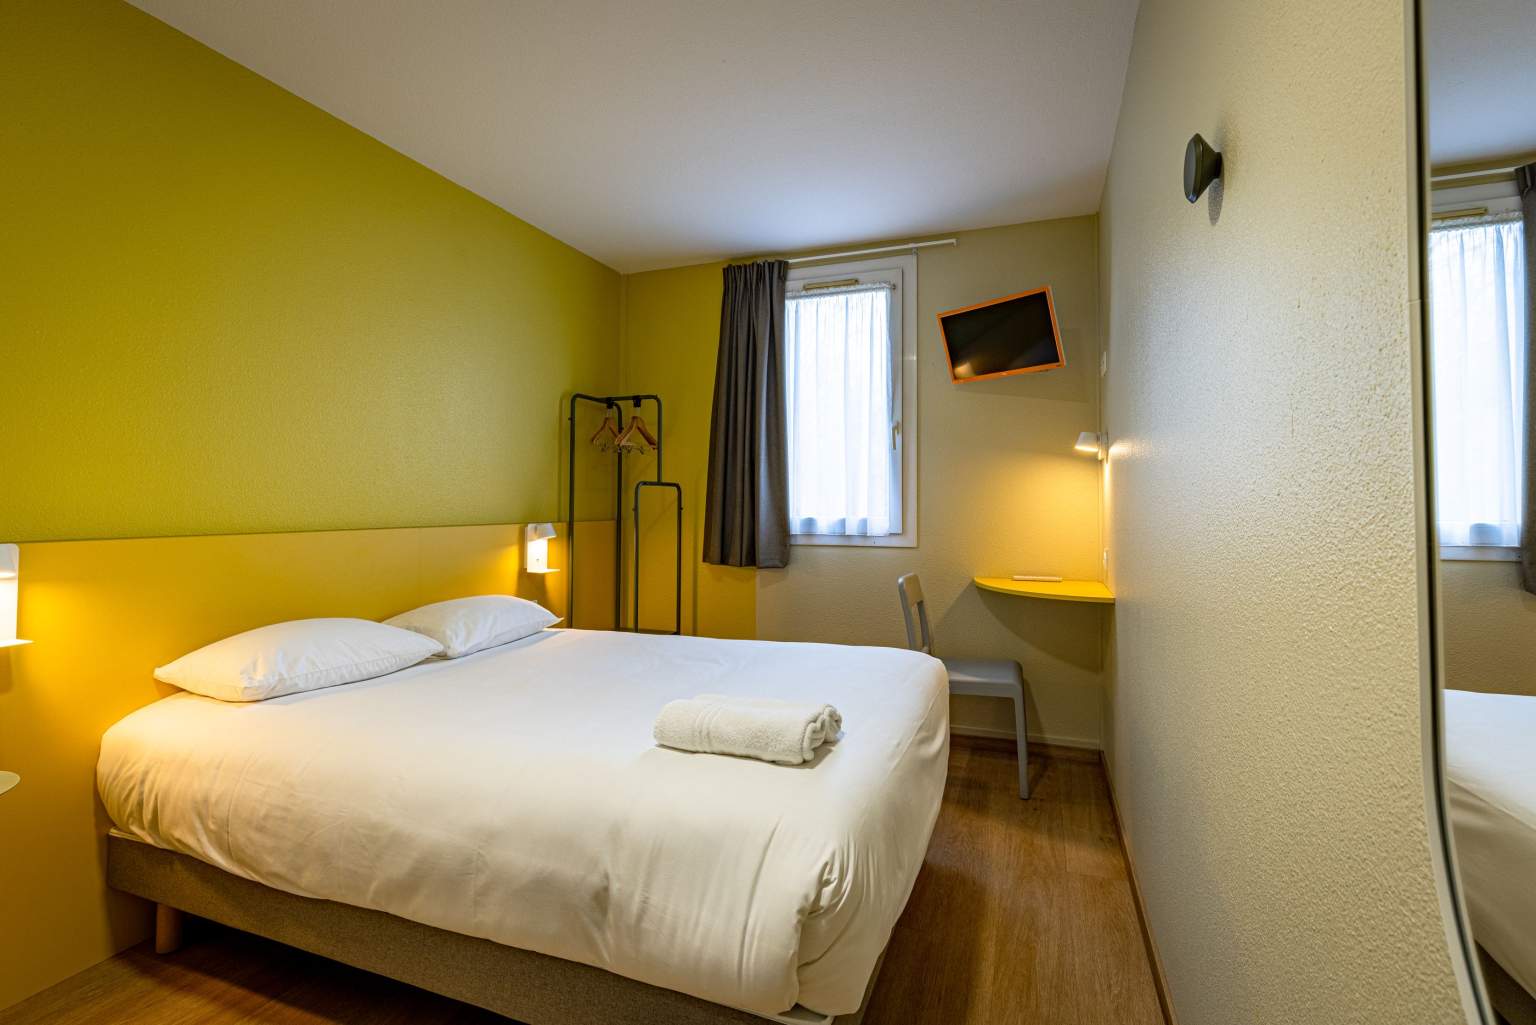 Zimmer VINI HOTEL in Beaune, preiswerte Hotel im Burgund